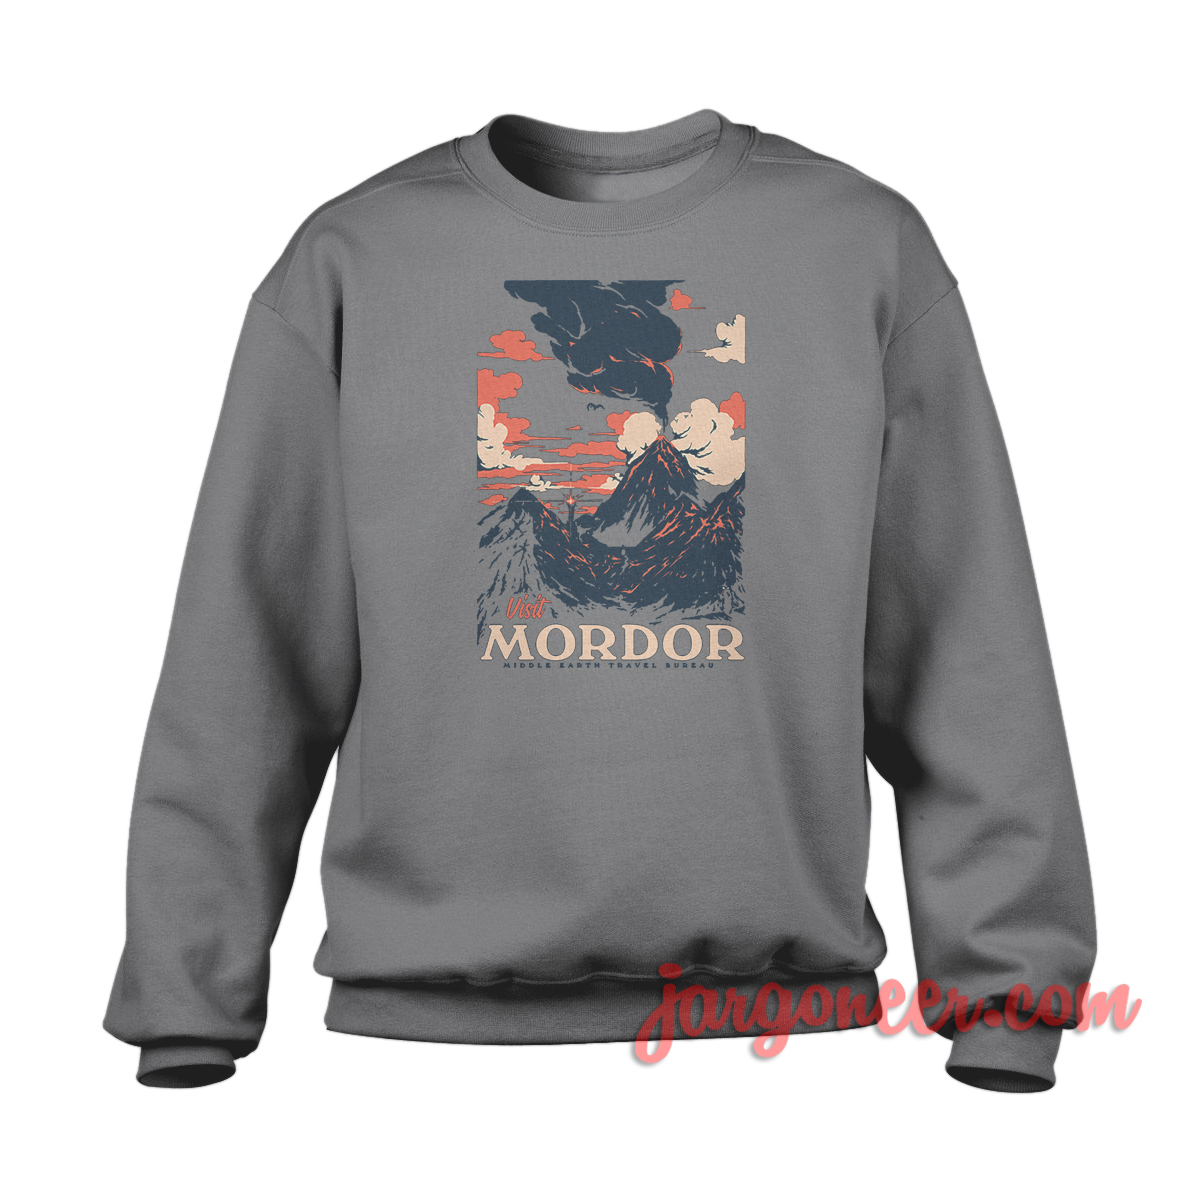 Visit Mordor - Shop Unique Graphic Cool Shirt Designs